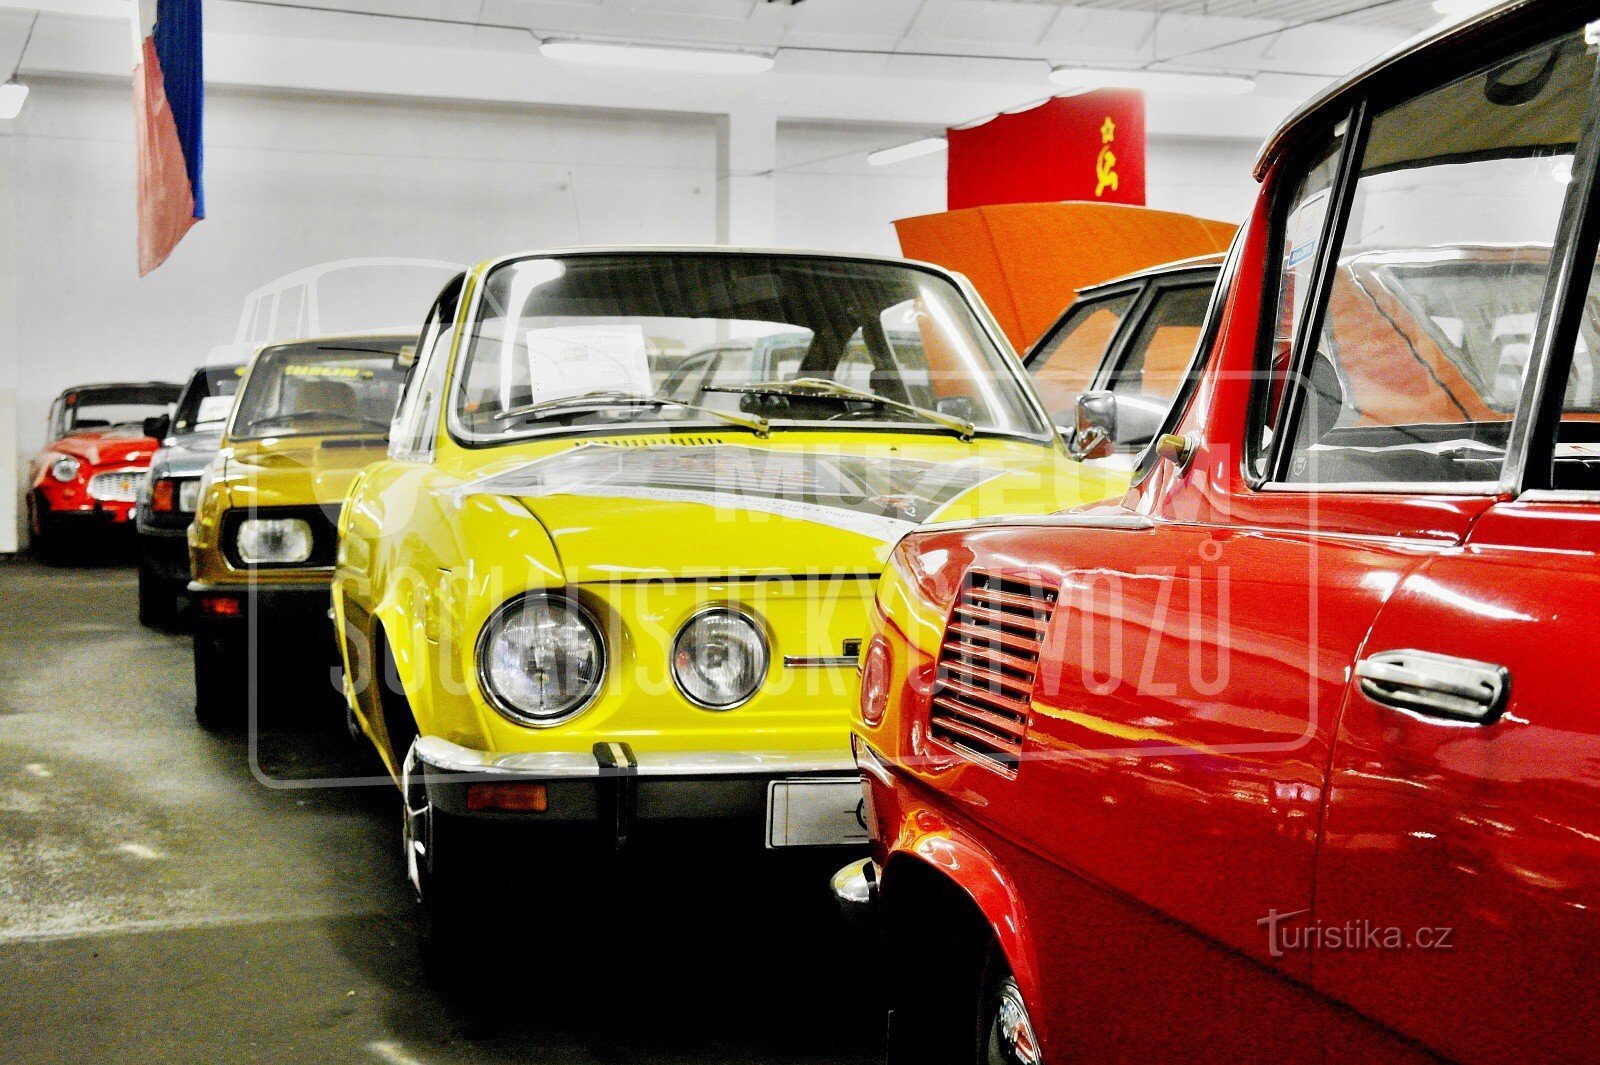 Museo de autos socialistas - Velké Hamry